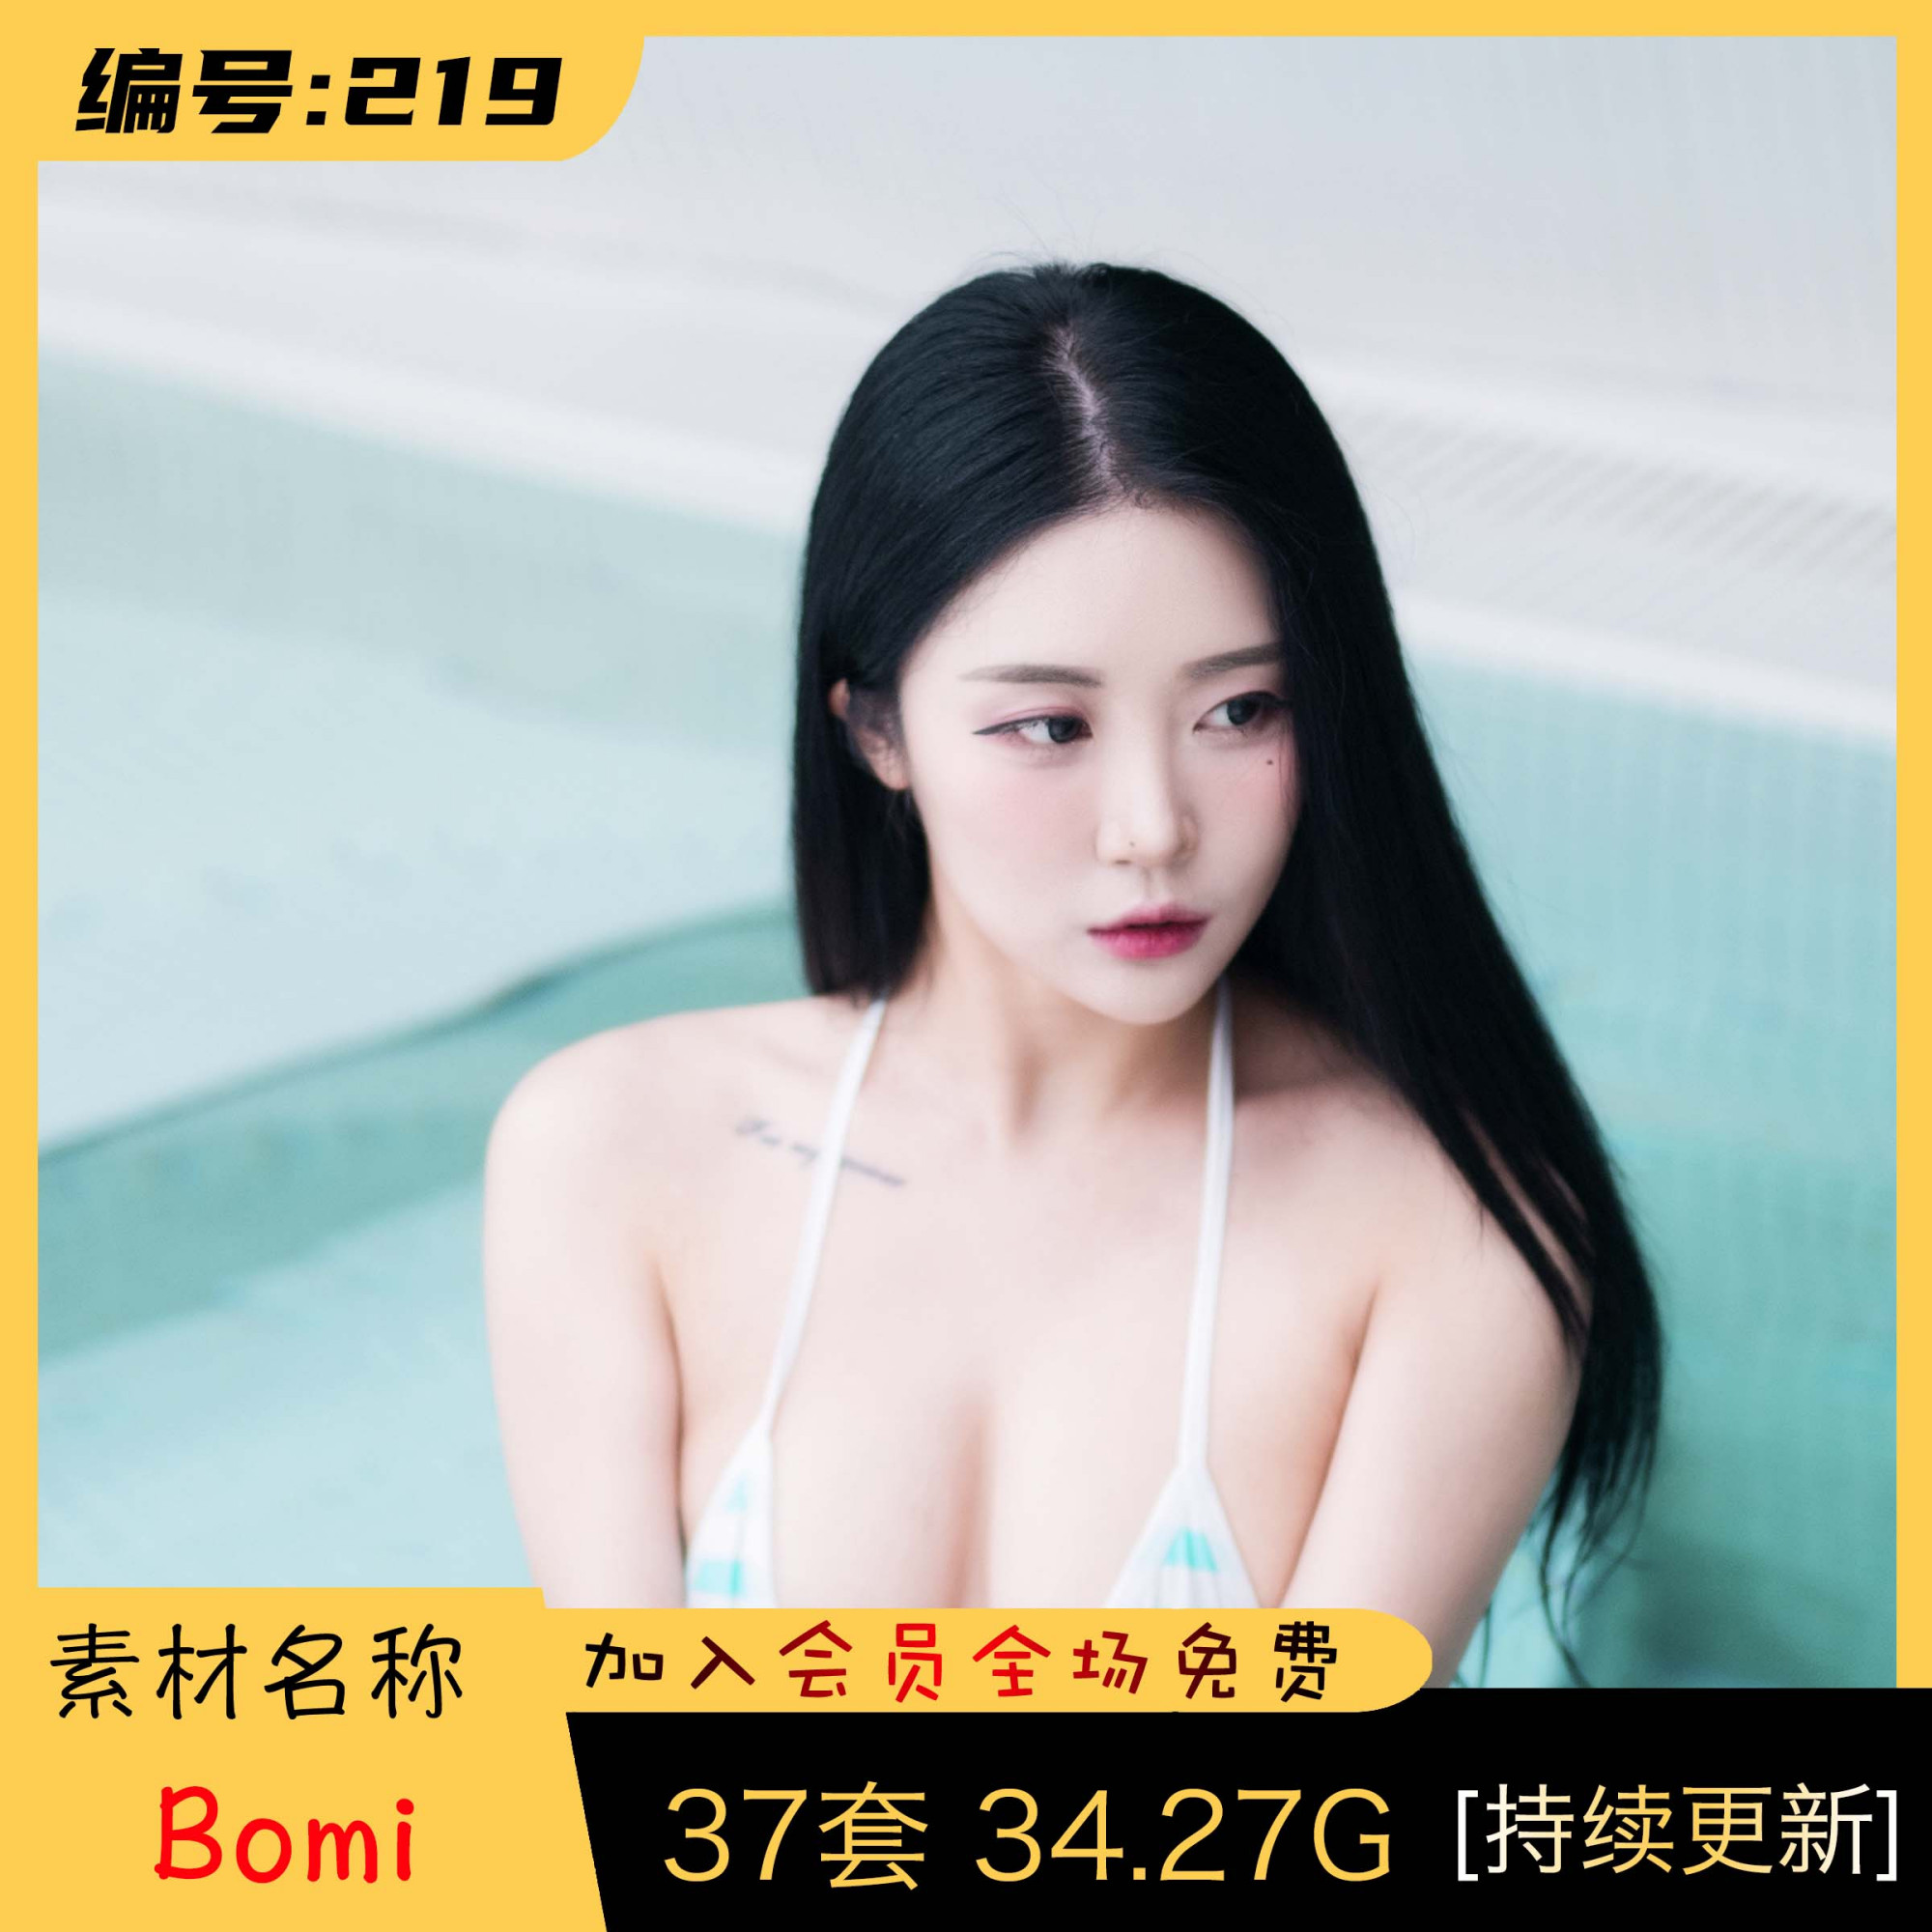 韩国妹子:Bomi (보미) 最全图包合集 [37套][持续更新]